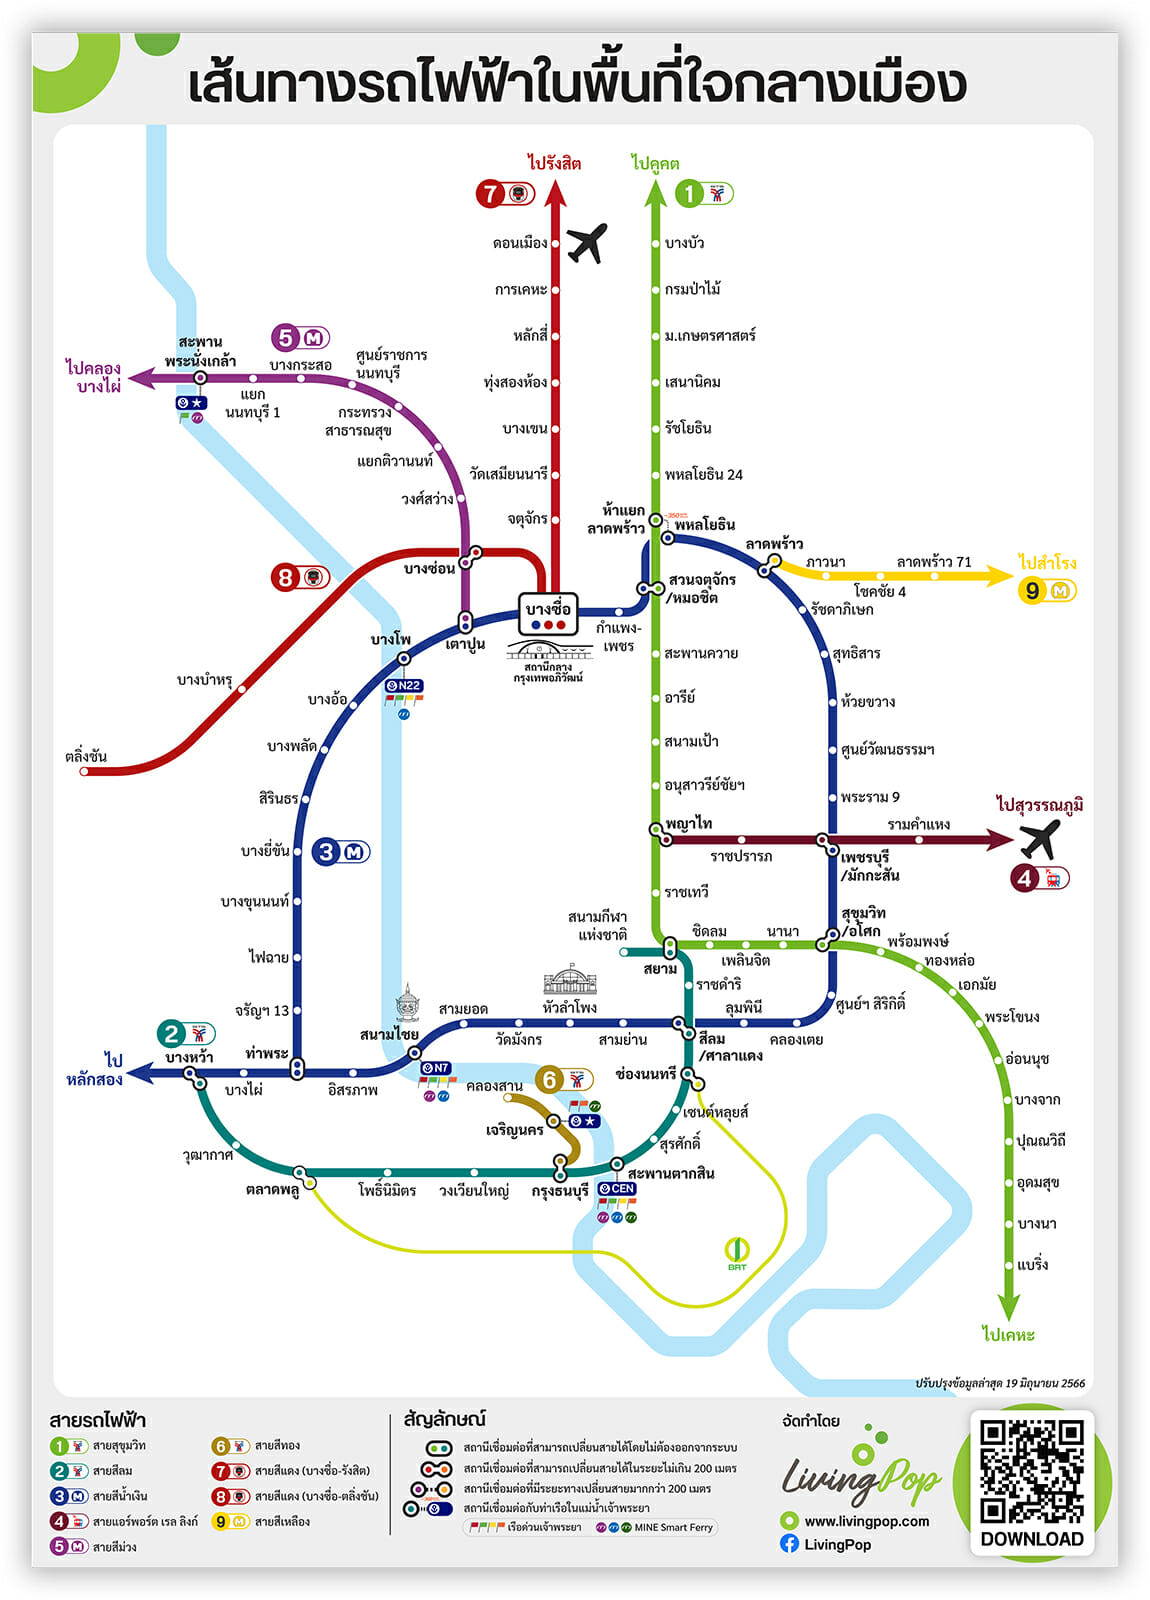 แผนที่เส้นทางรถไฟฟ้าในกรุงเทพฯ-ปริมณฑล รวมทุกสาย โหลด Pdf ฟรี![Th/En] —  Livingpop